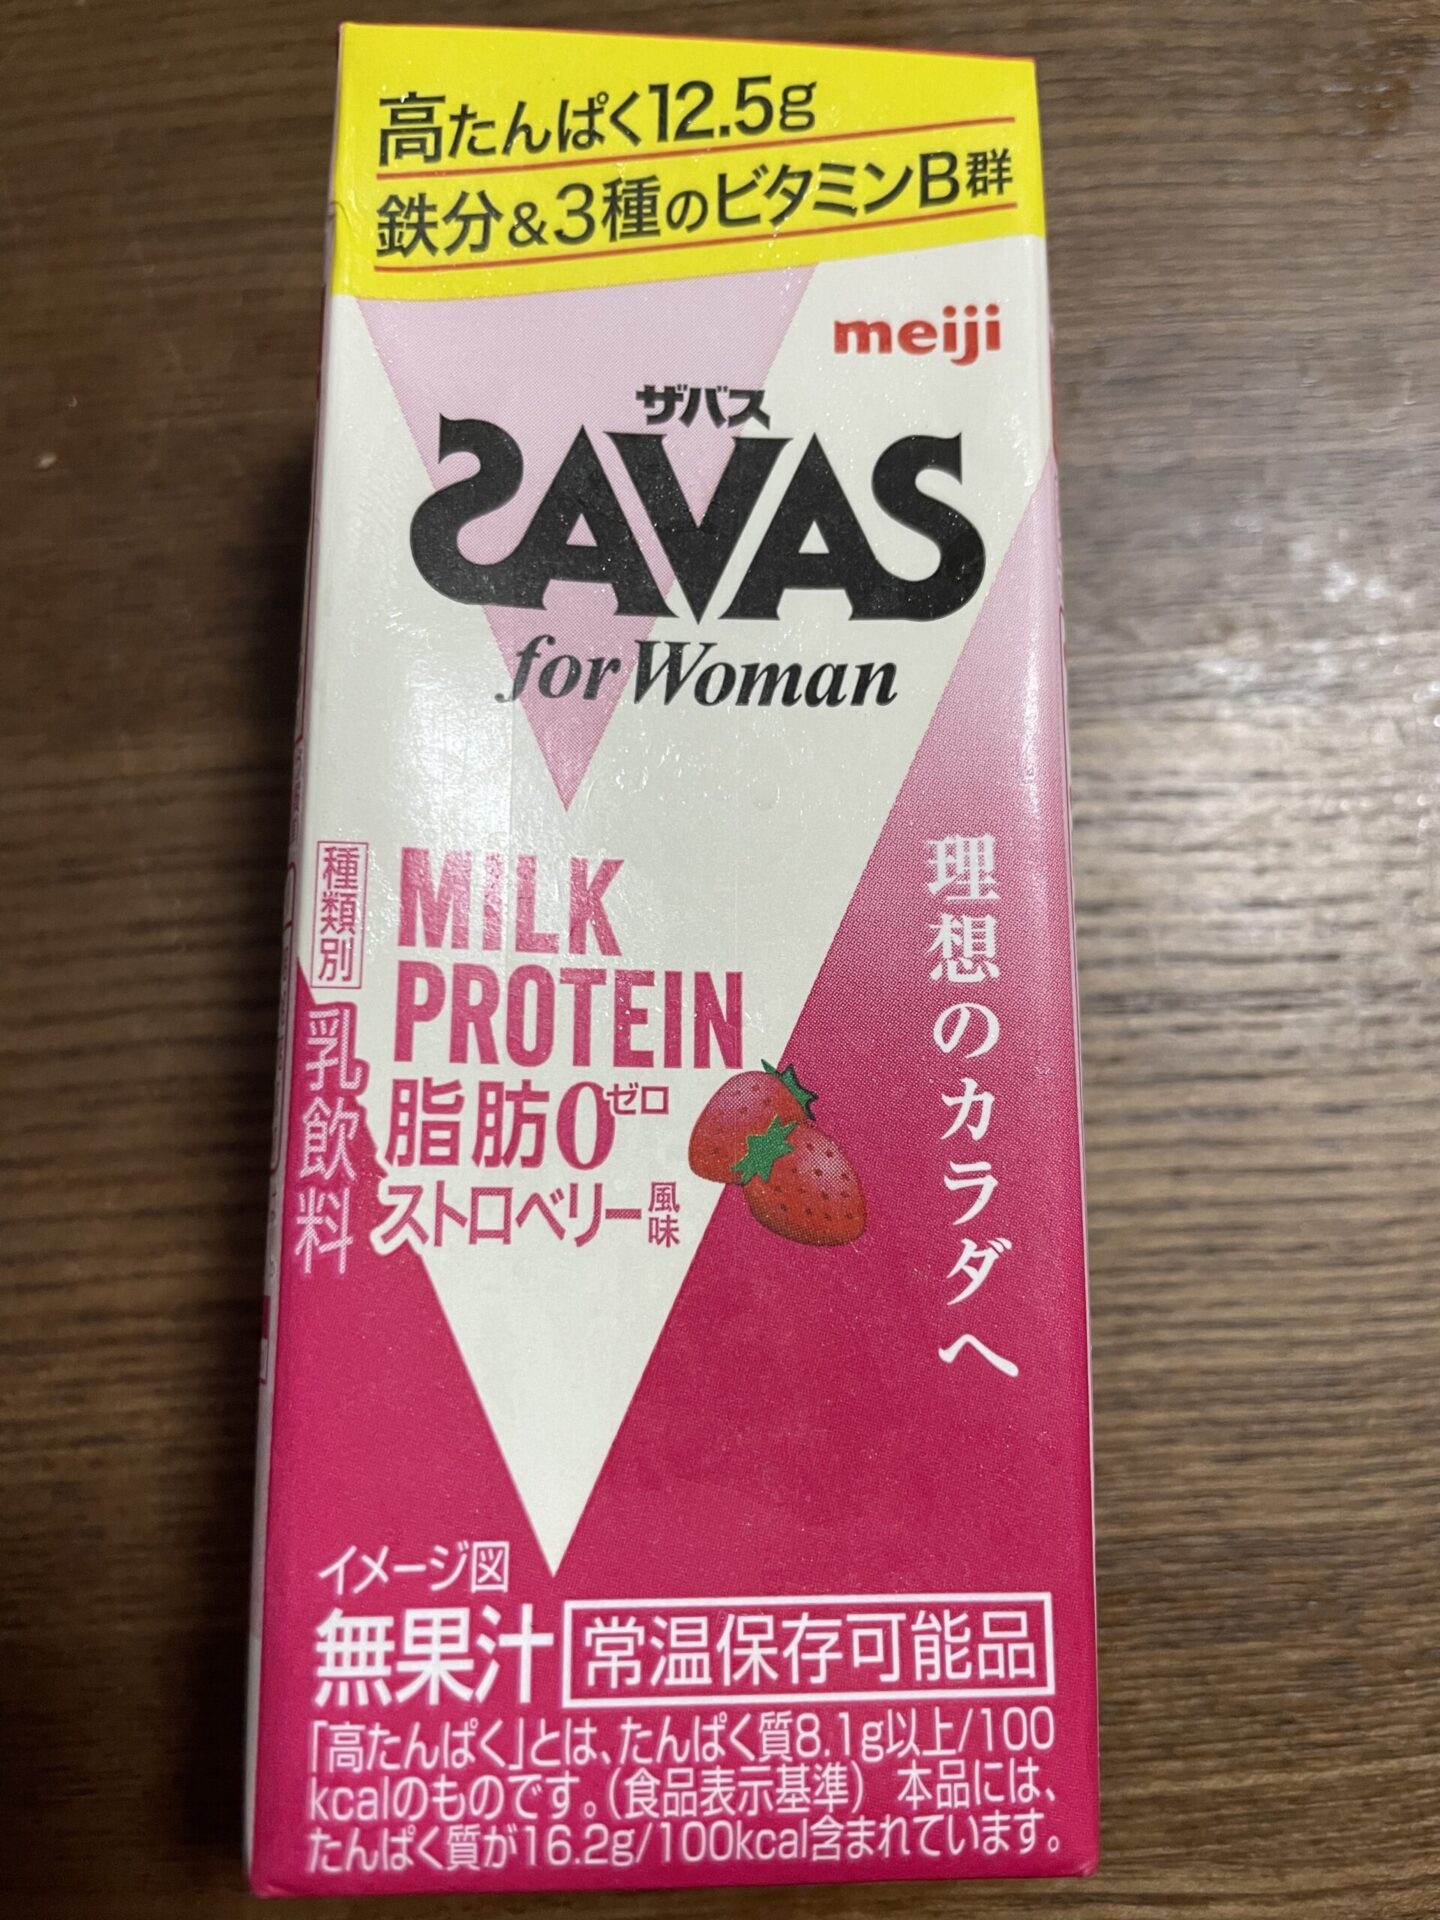 ザバス　SAVAS for Woman MILK PROTEIN ストロベリー風味